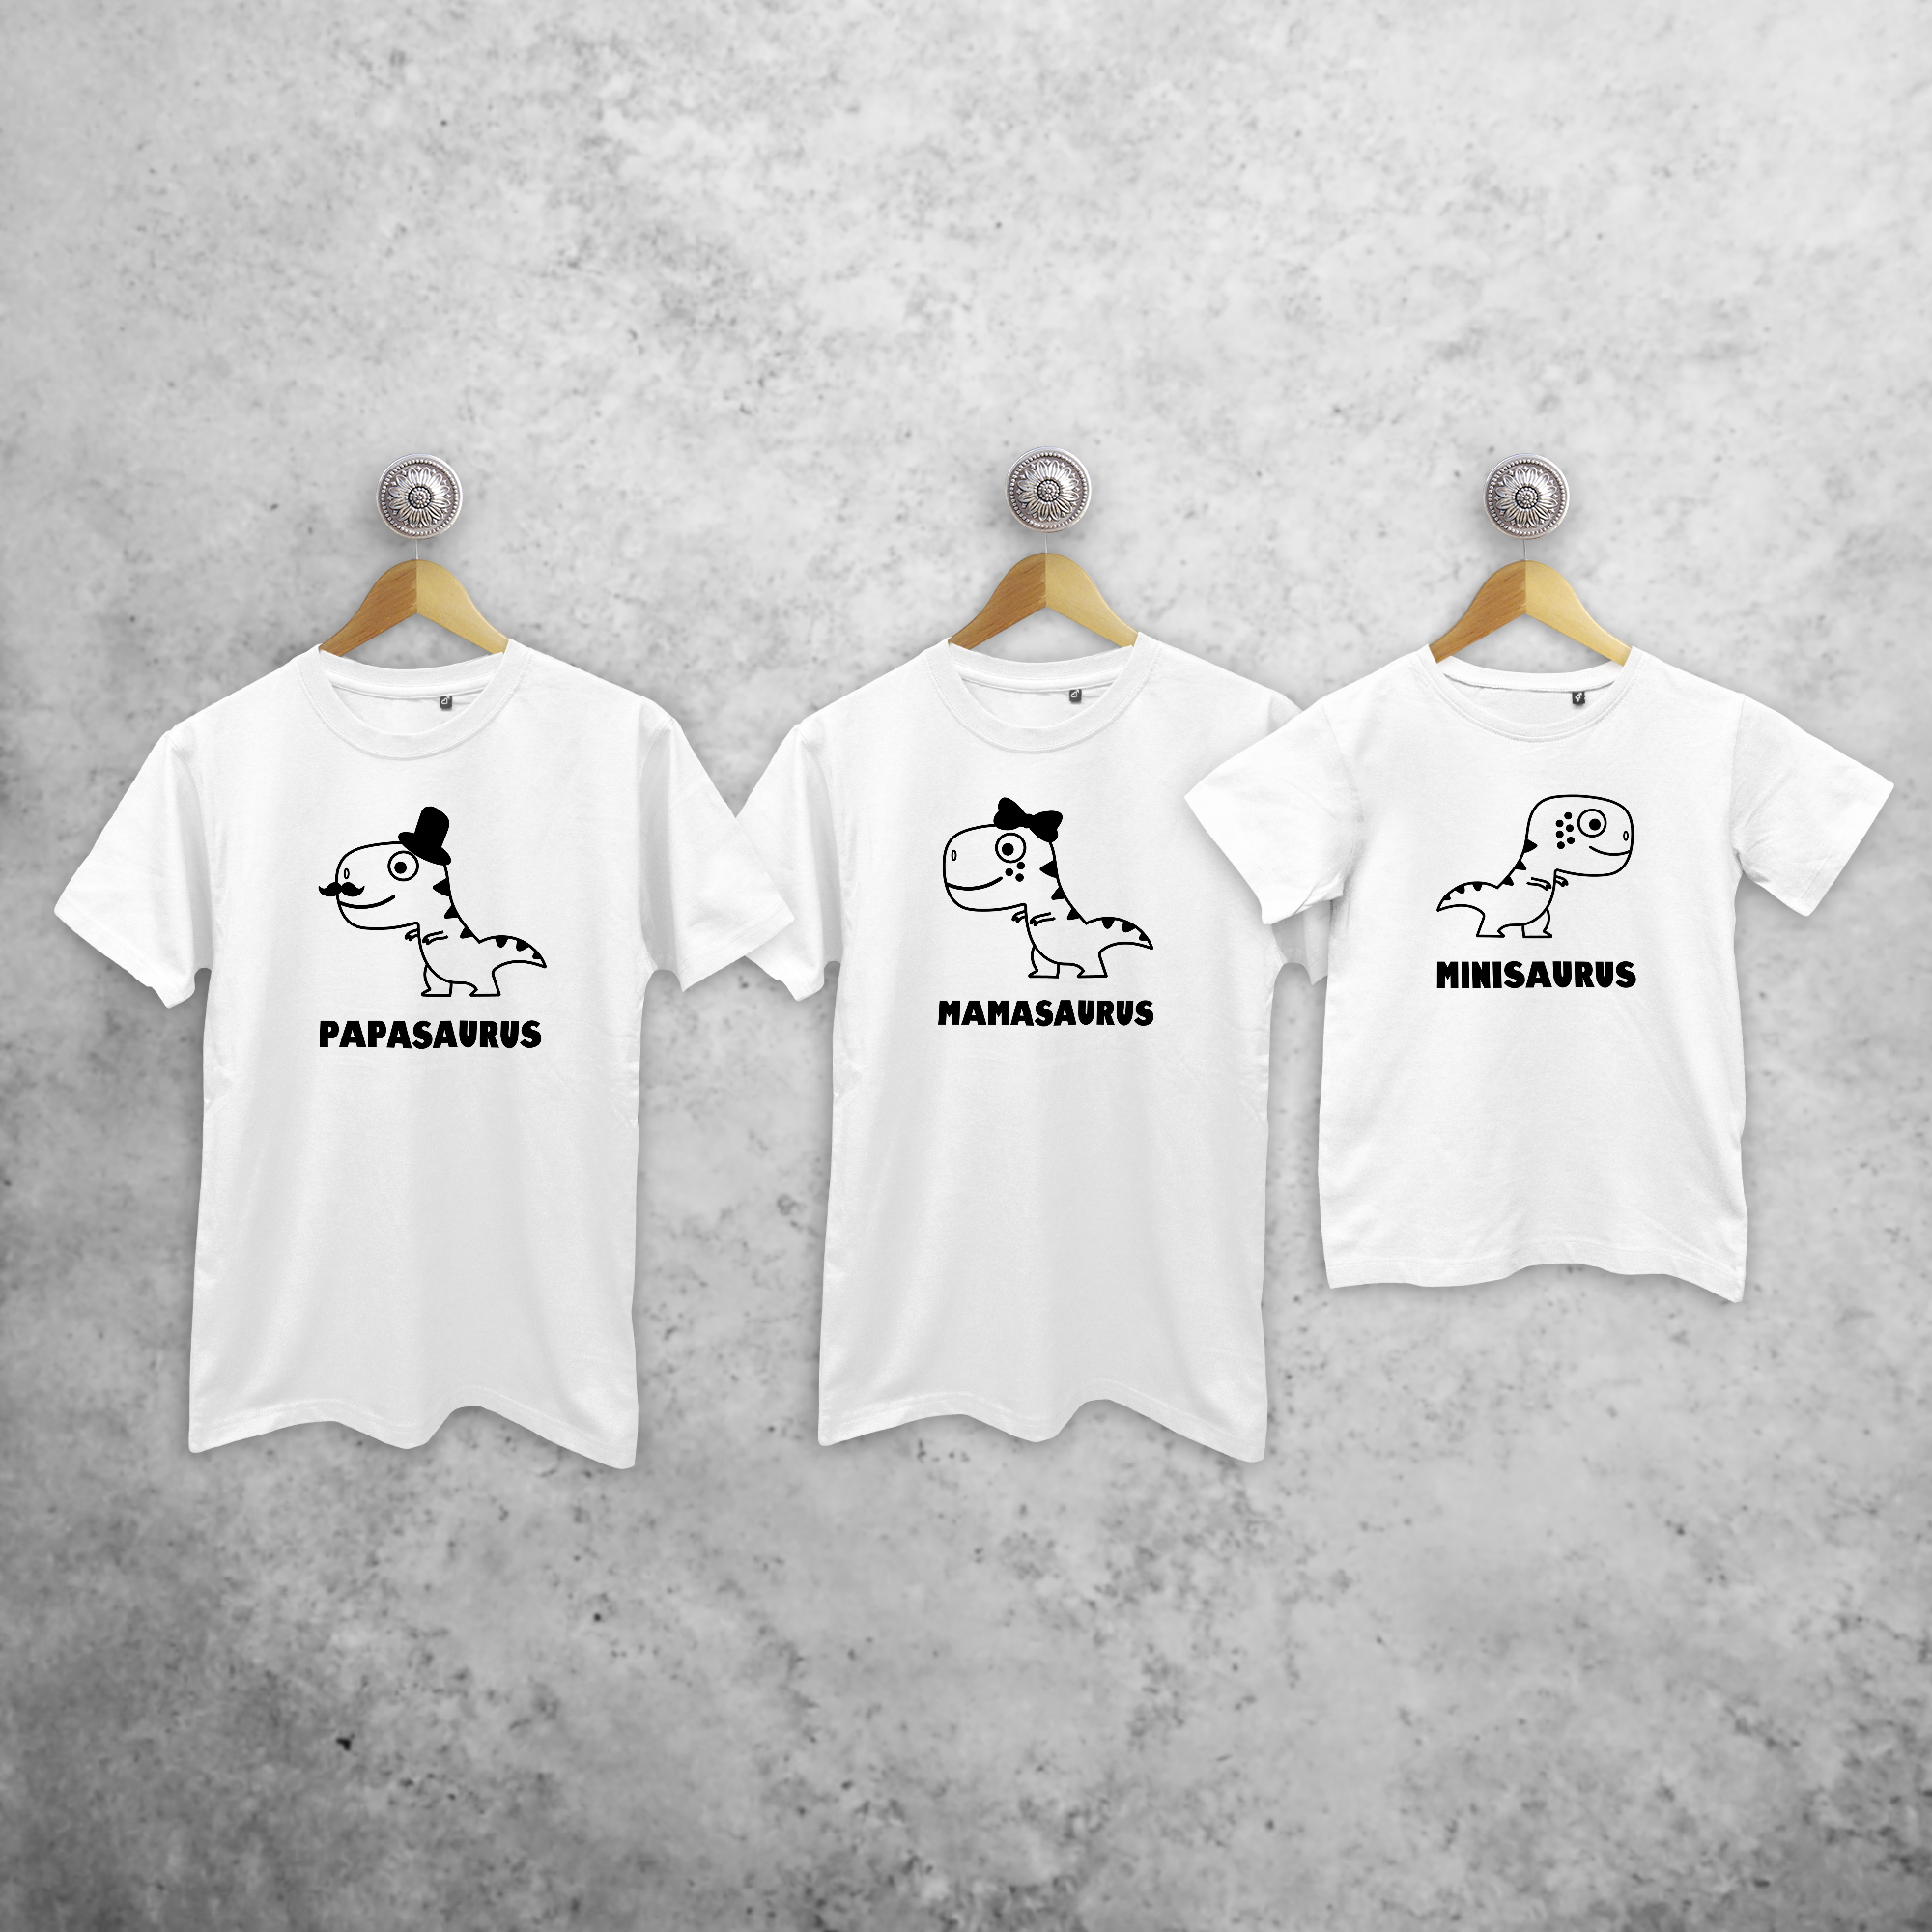 'Papasaurus', 'Mamasaurus' & 'Minisaurus' matchende shirts